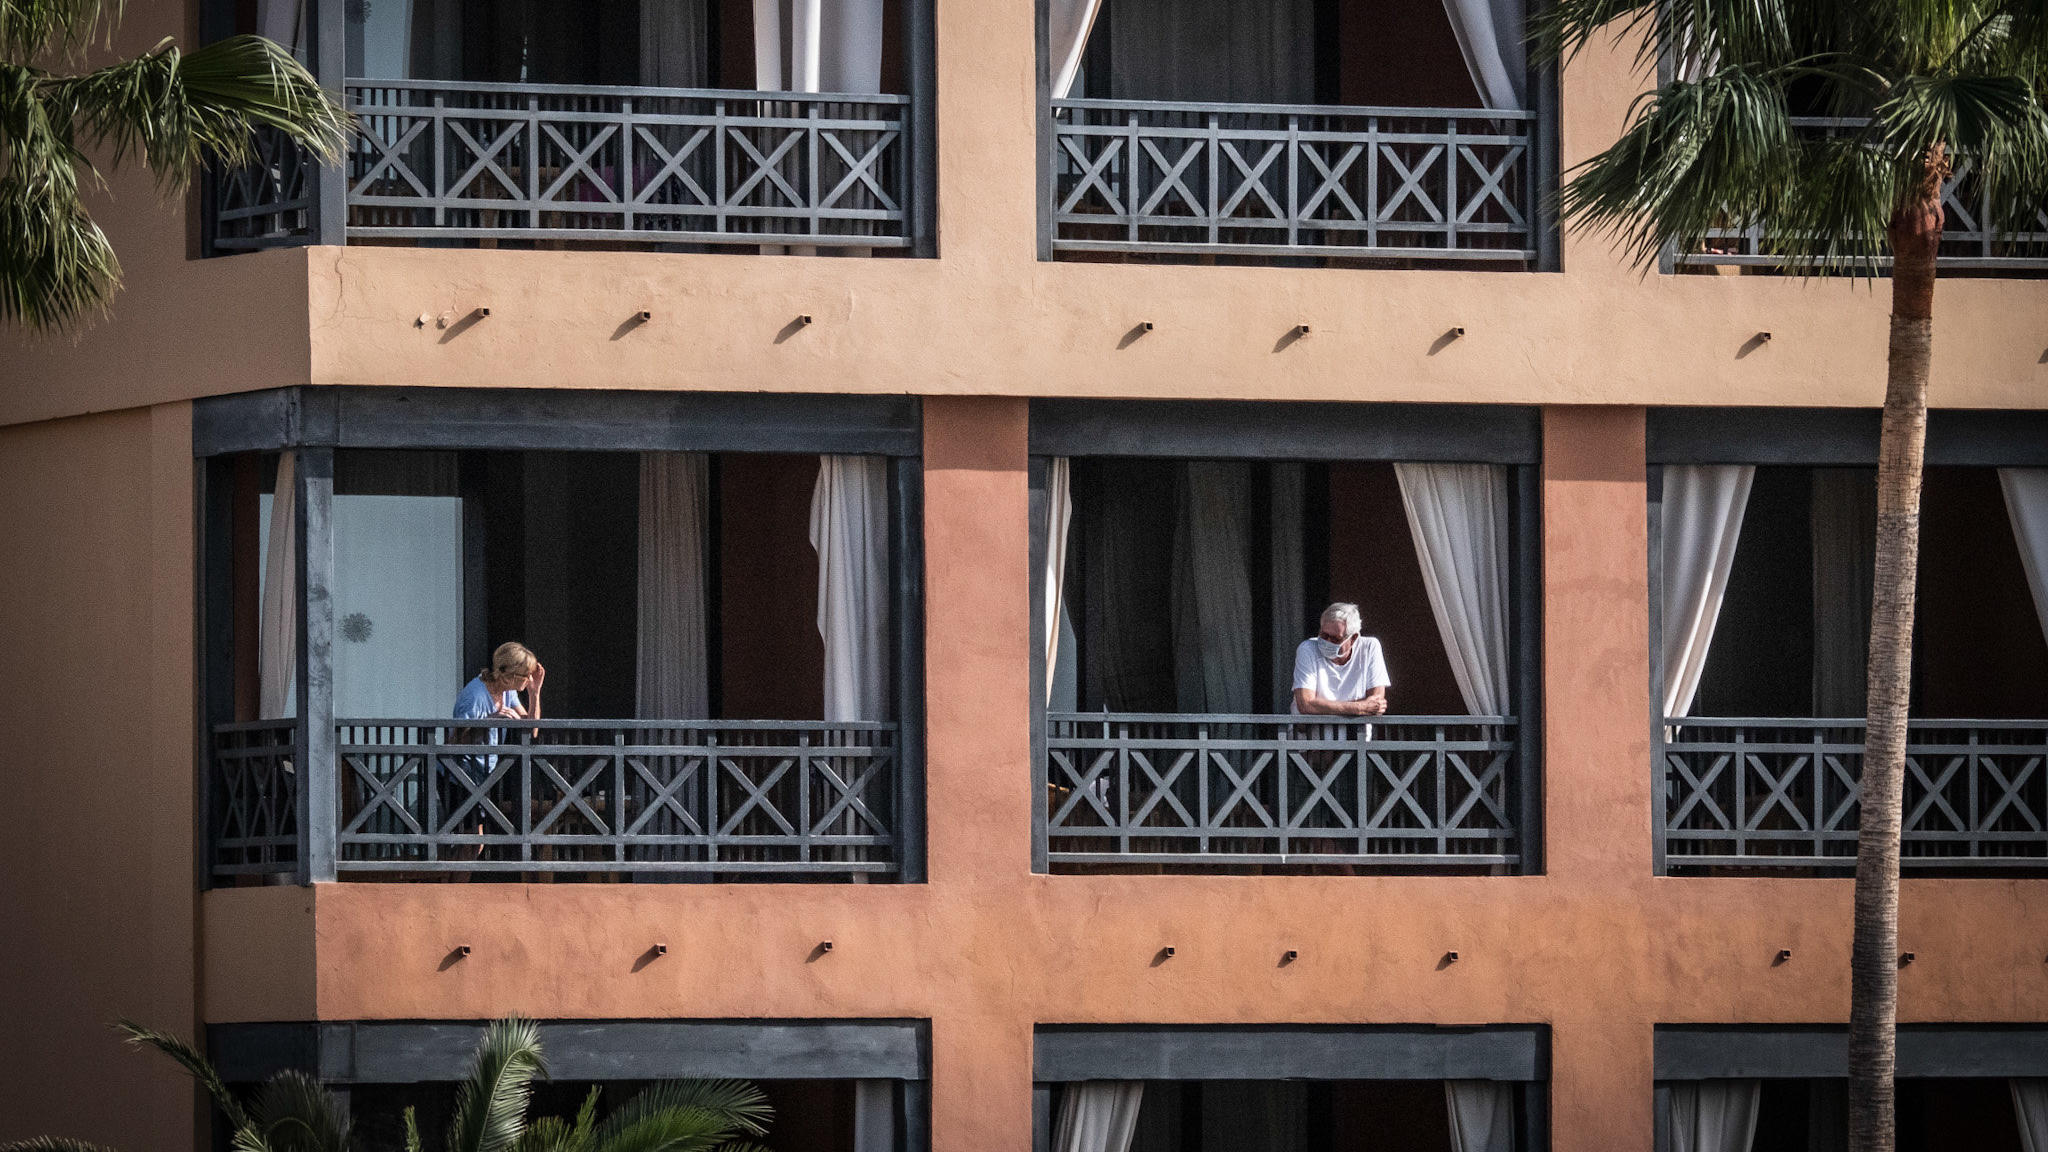 27.02.2020, Spanien, Santa Cruz de Tenerife: Das Hotel H10 Costa Adeje Palace, auf dessen Balkon Gäste stehen. Das wegen Coronavirus-Fällen unter Quarantäne gestellte Hotel auf Teneriffa ist weiterhin durch die Polizei abgeriegelt. Foto: Arturo Rodri